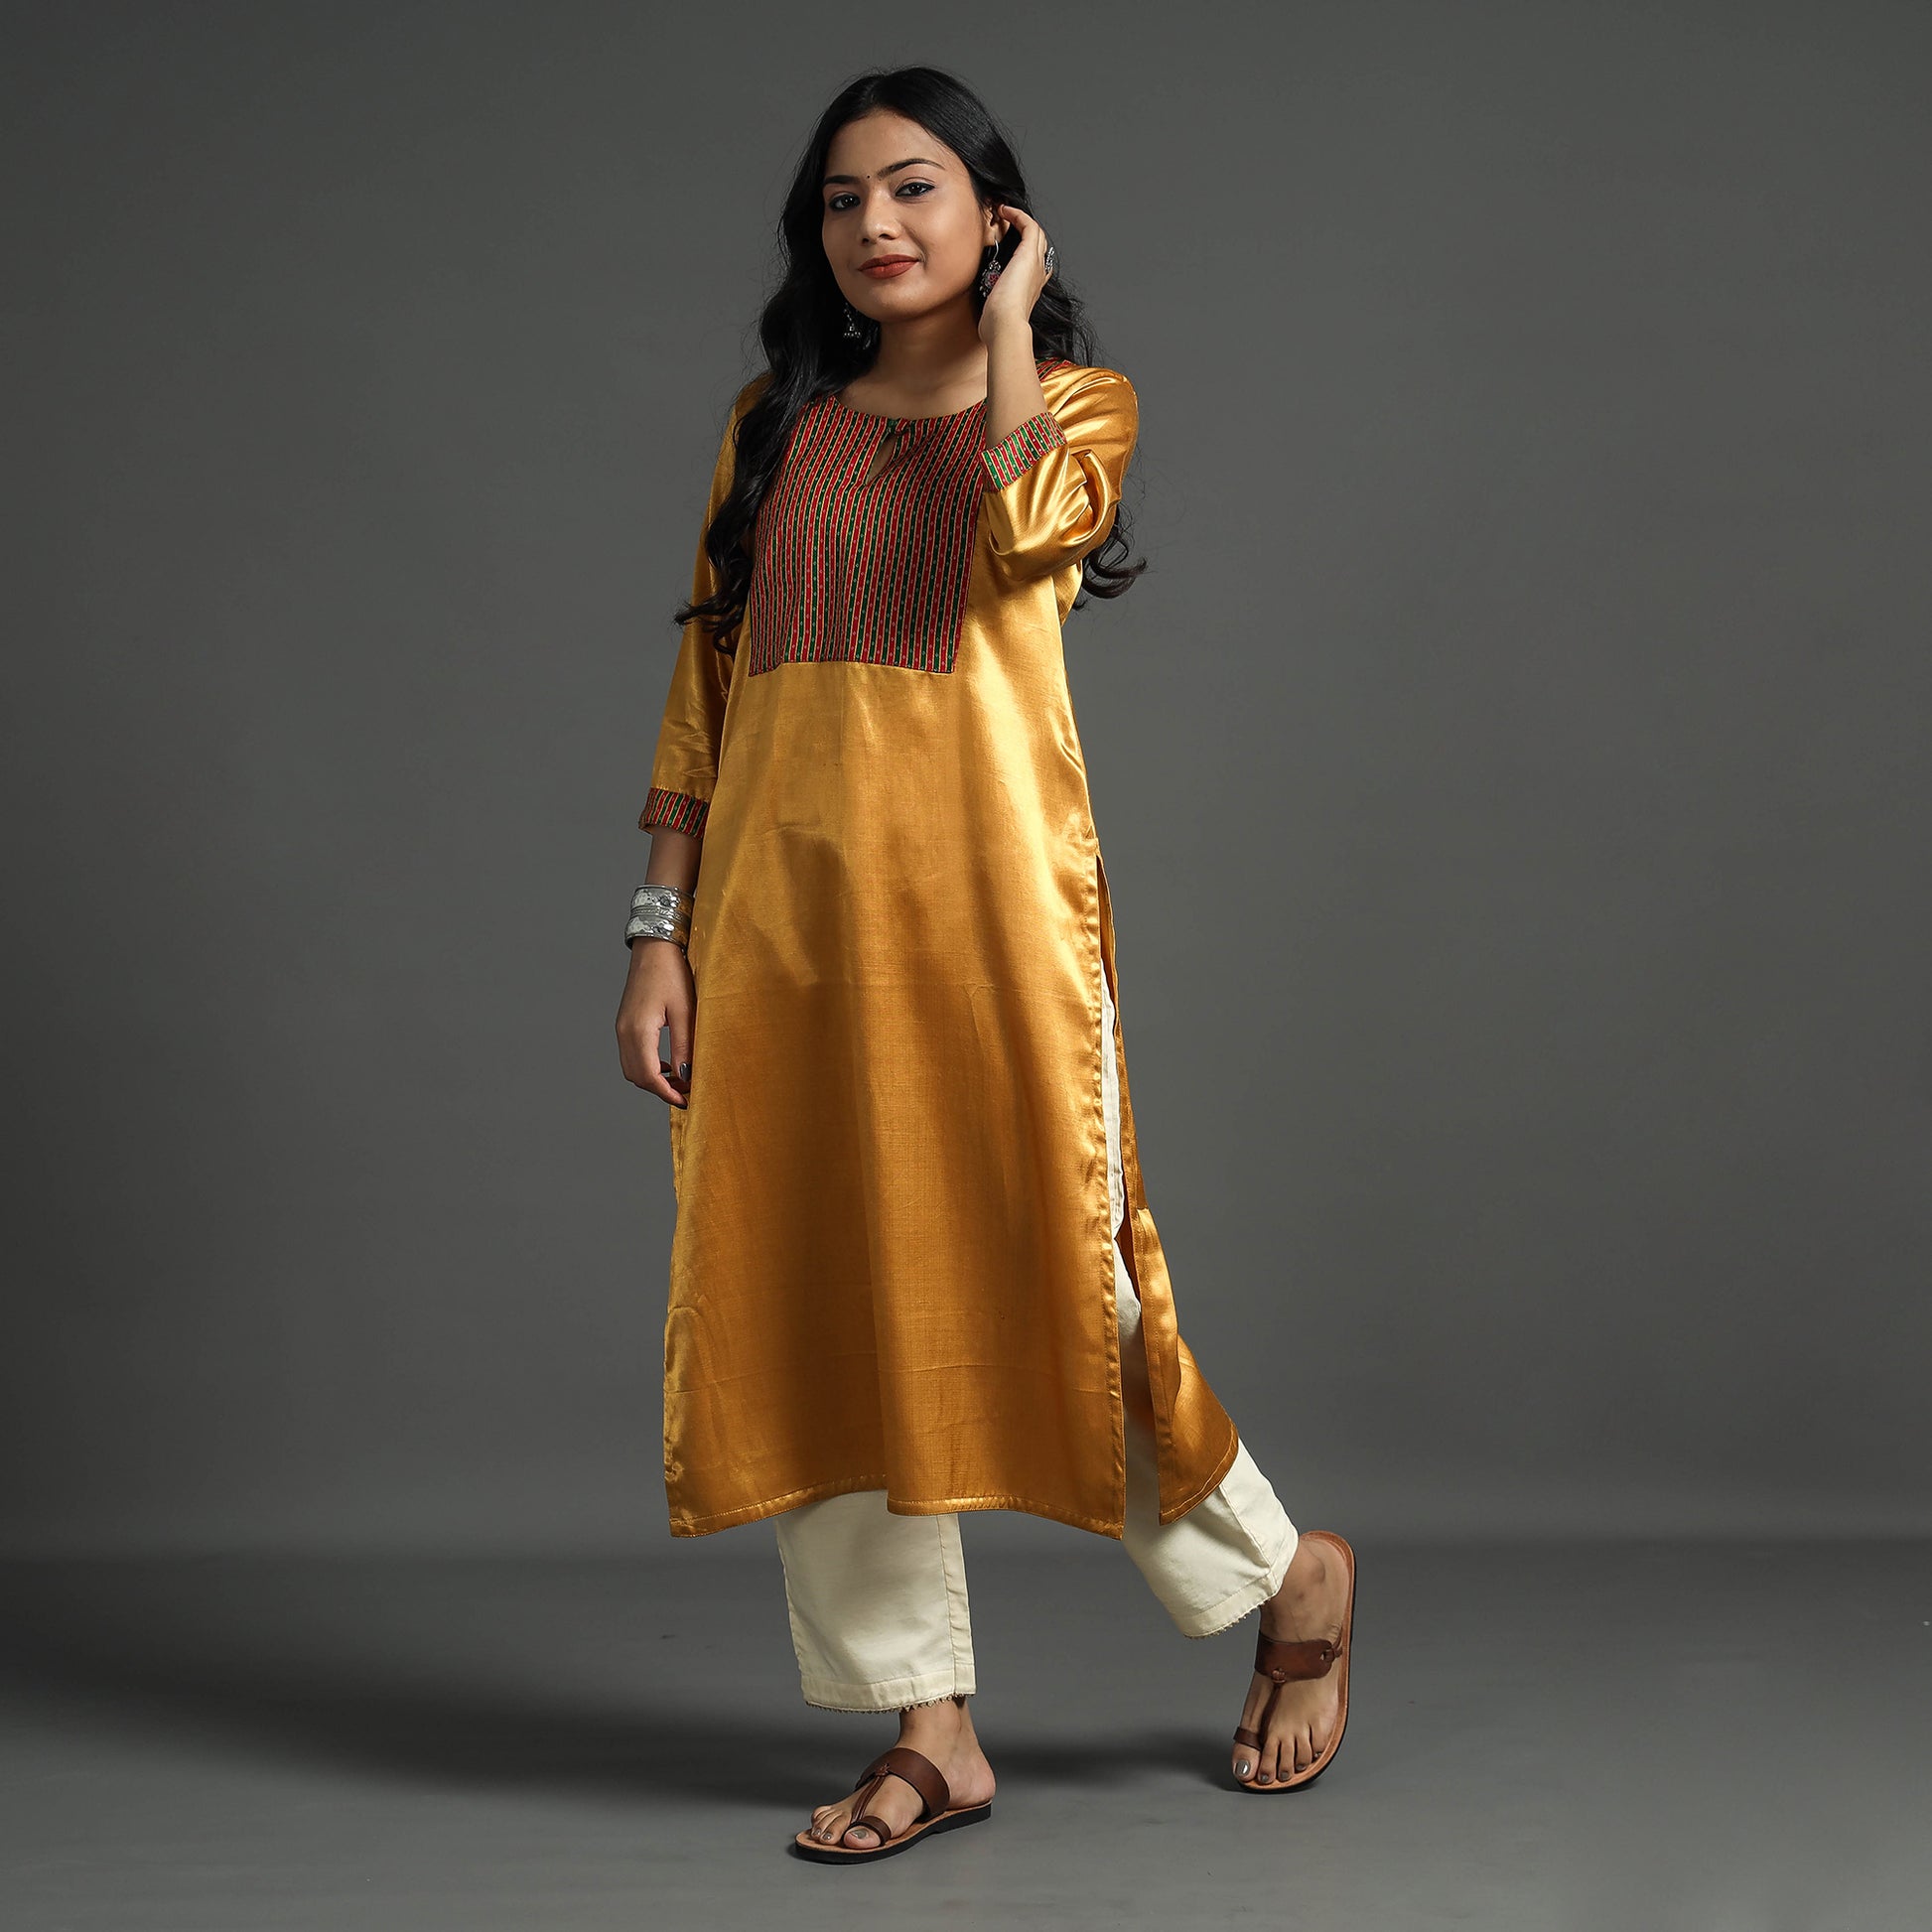 Plain Beige Color Women's Dress, Handwash, Casual Wear at Rs 1050